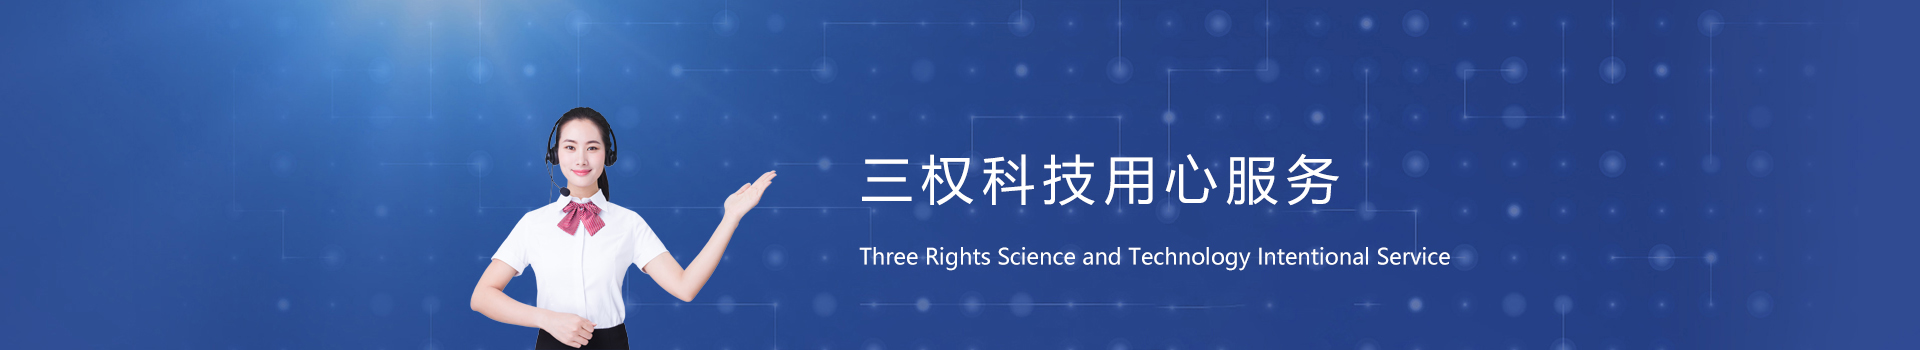 重庆三权科技发展有限公司